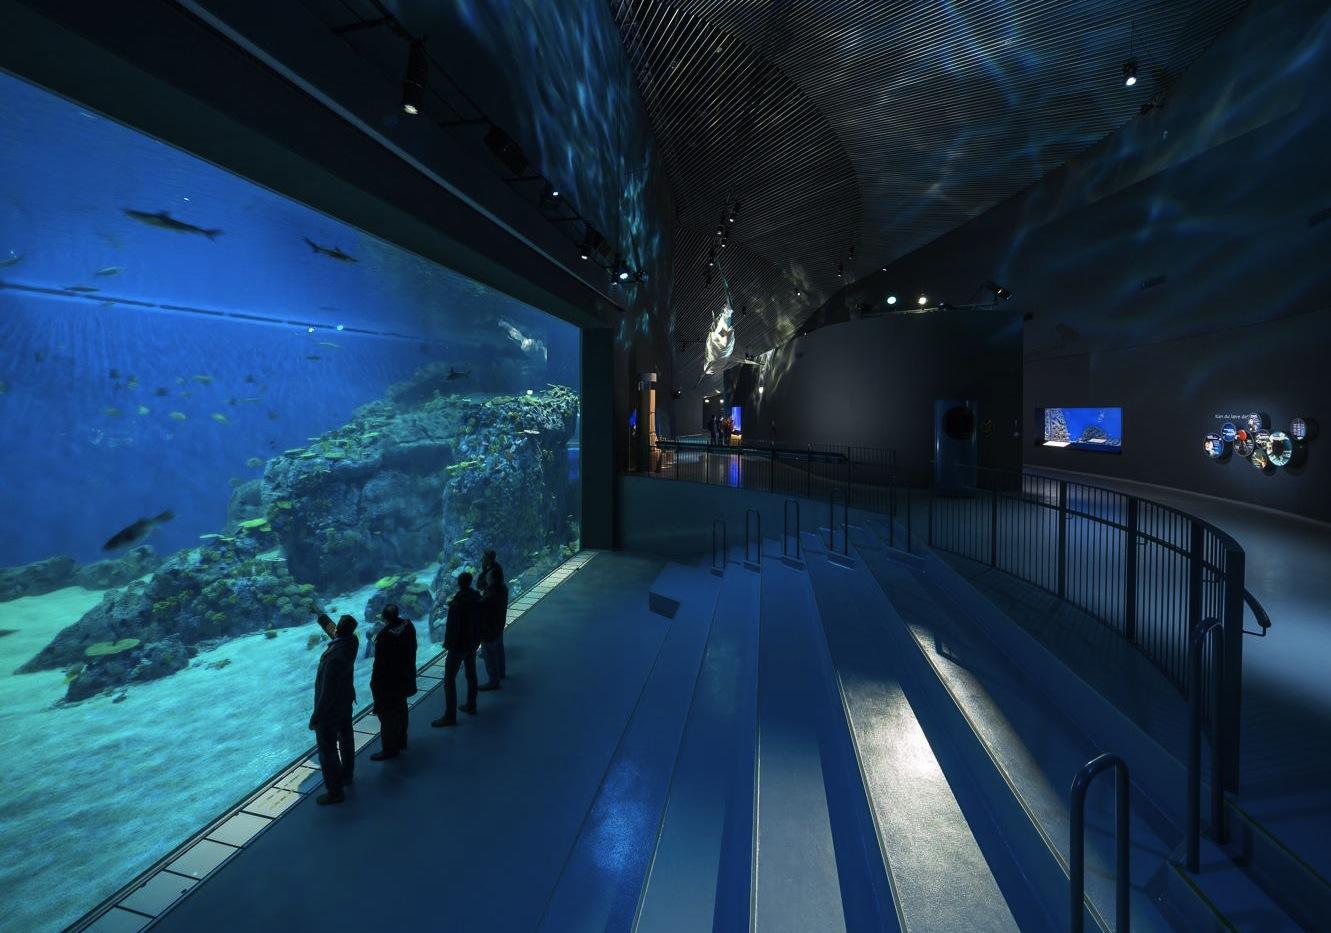 Den Blå Planet, le nouvel aquarium de Copenhague